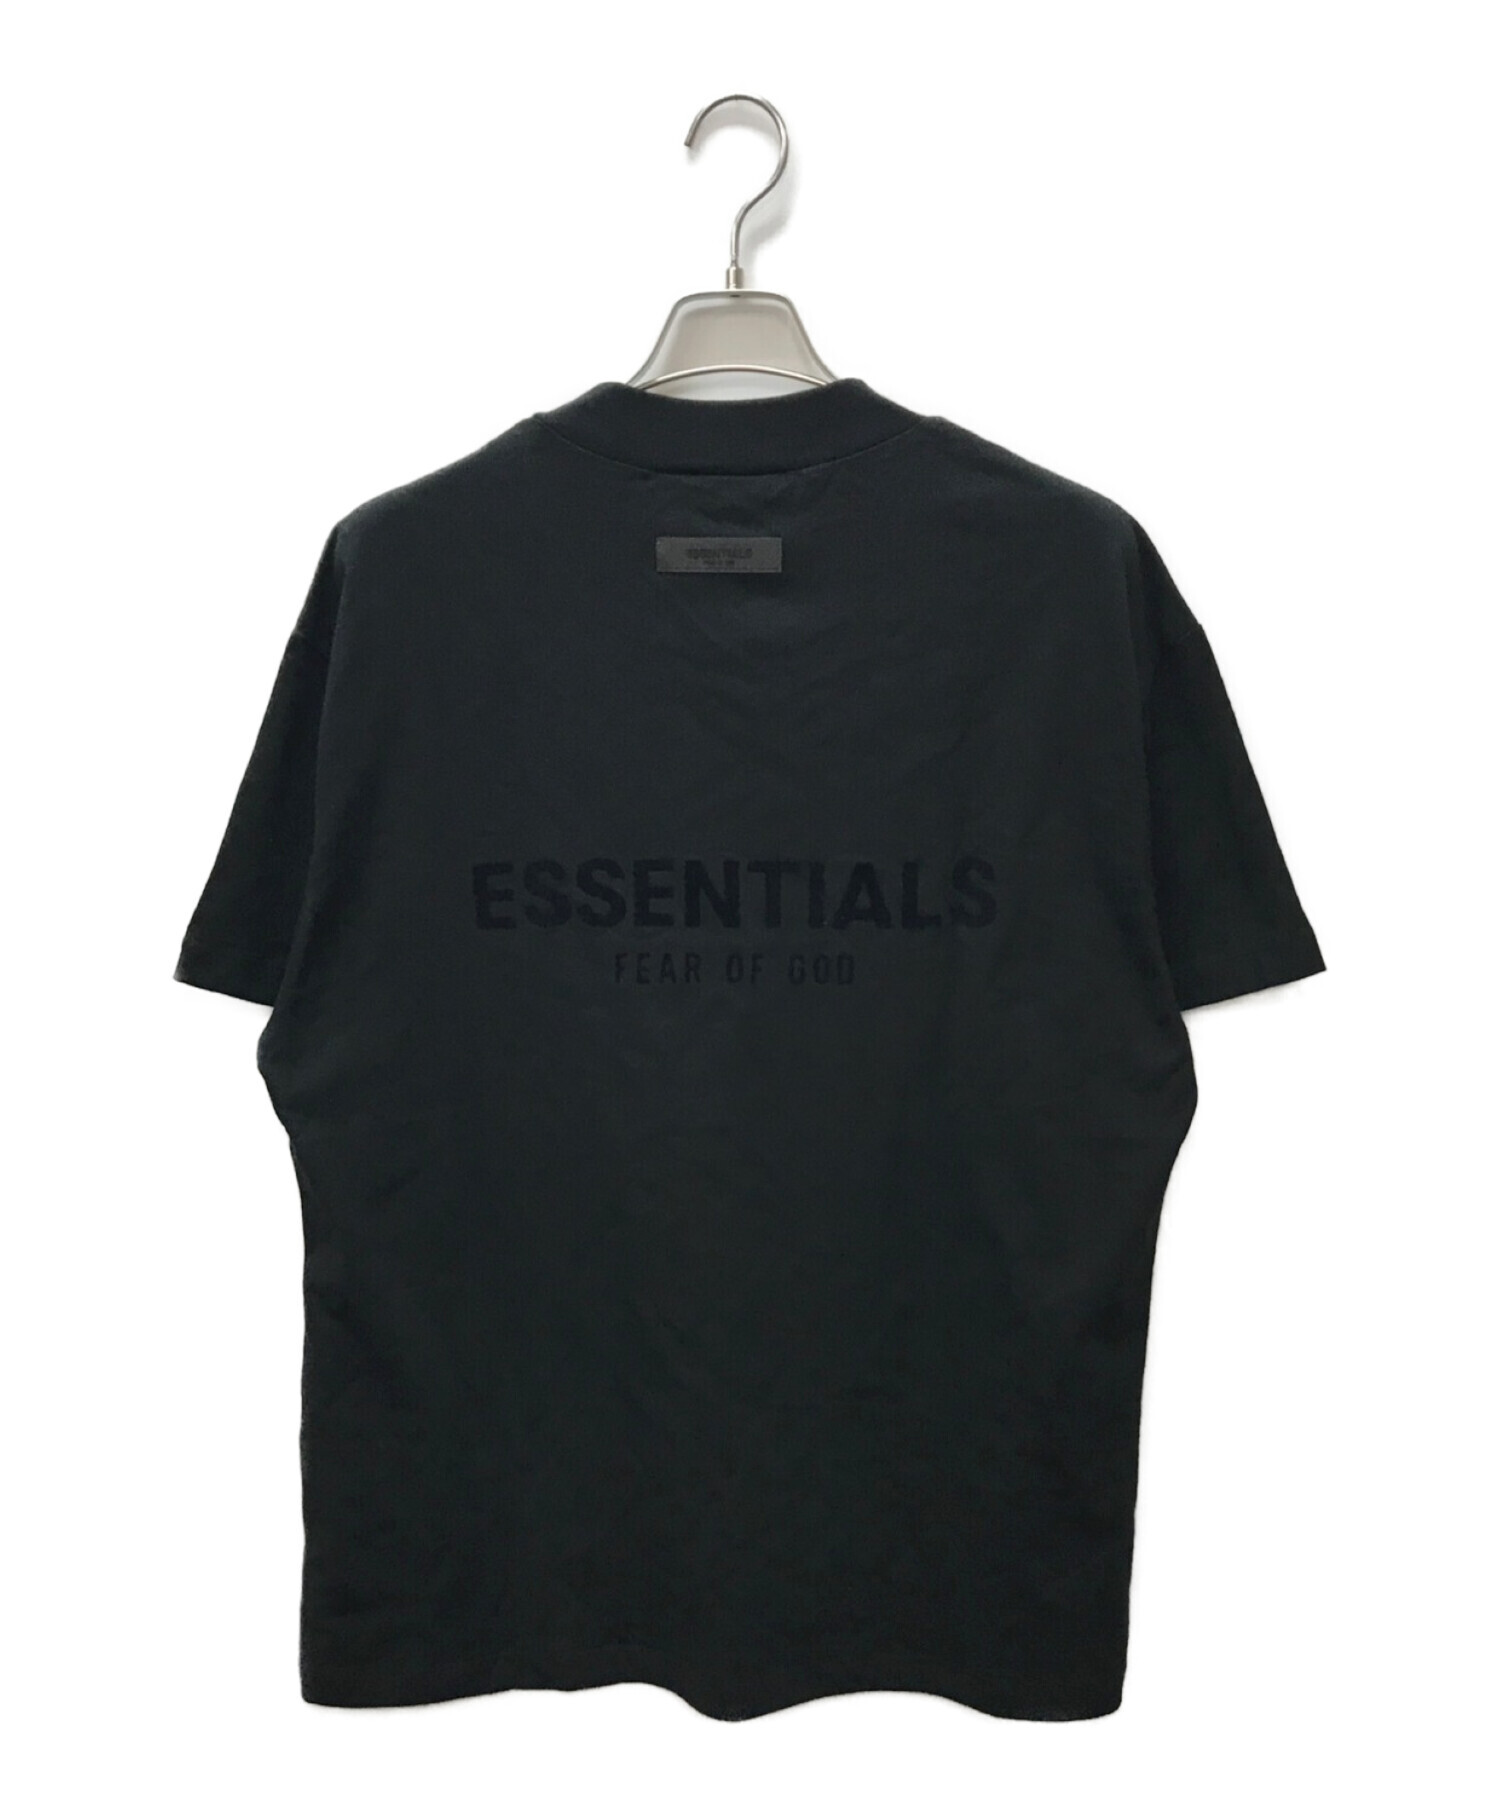 FOG ESSENTIALS バックロゴ Tシャツ ブラック / Mサイズ